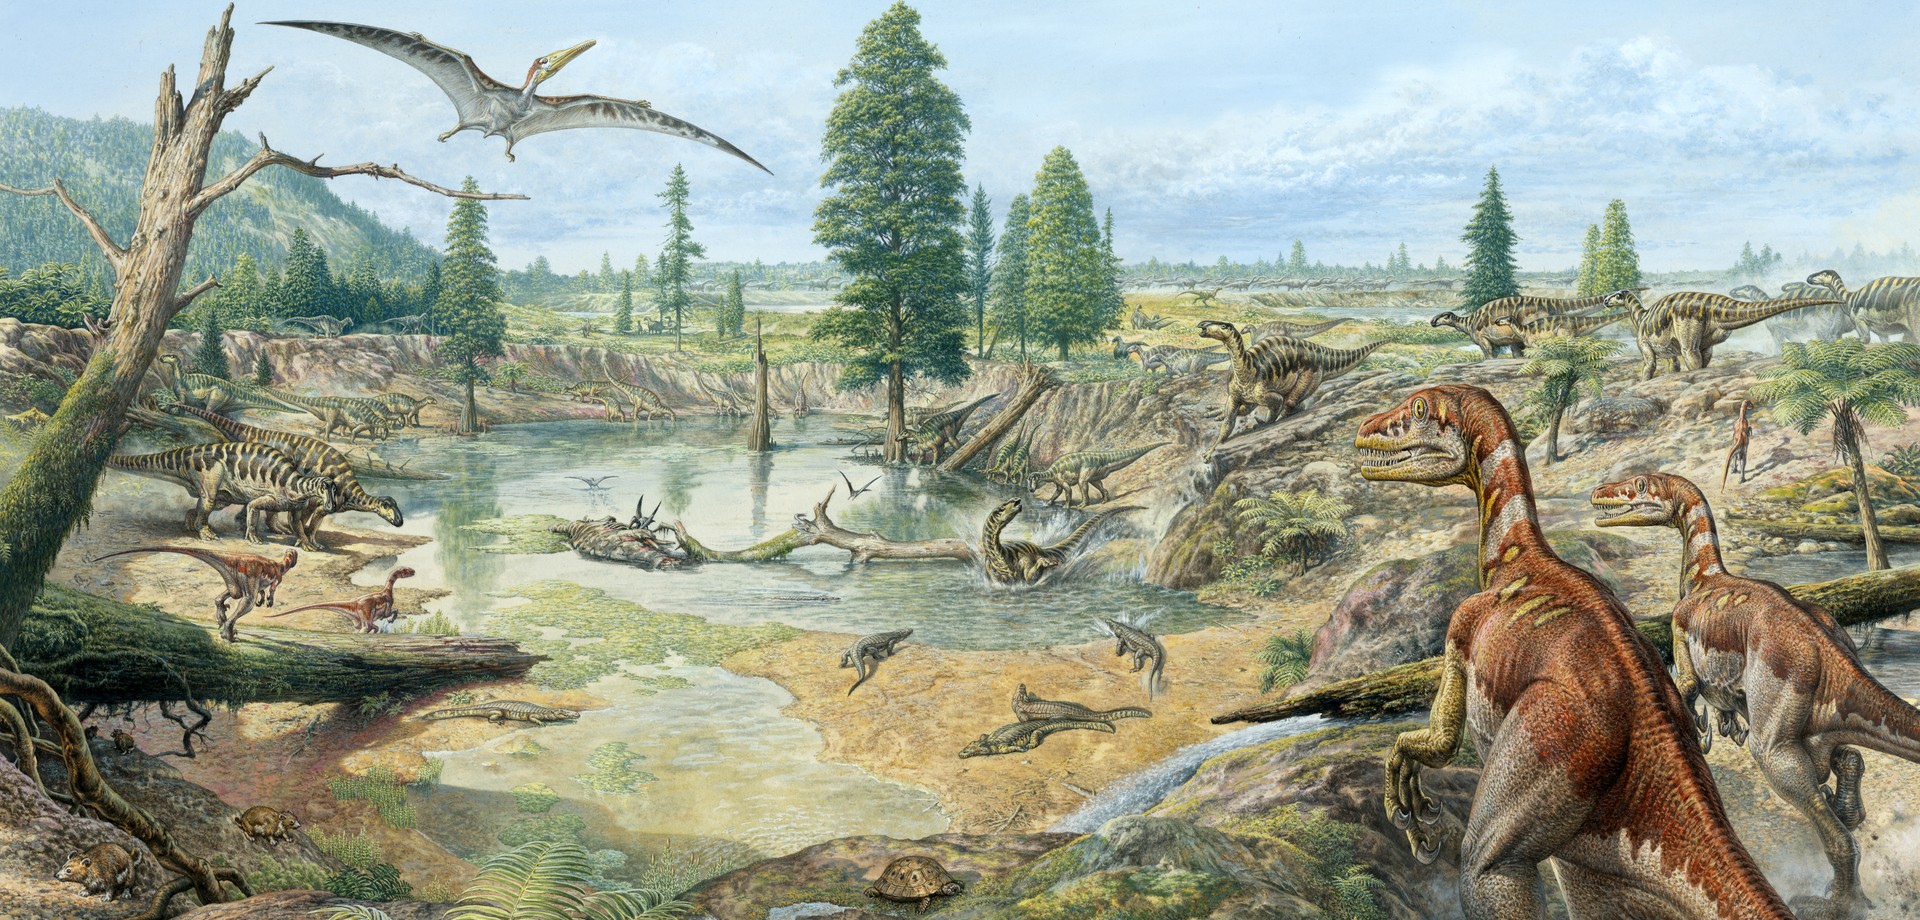 Rekonstruktion einer Landschaft mit Dinosauriern